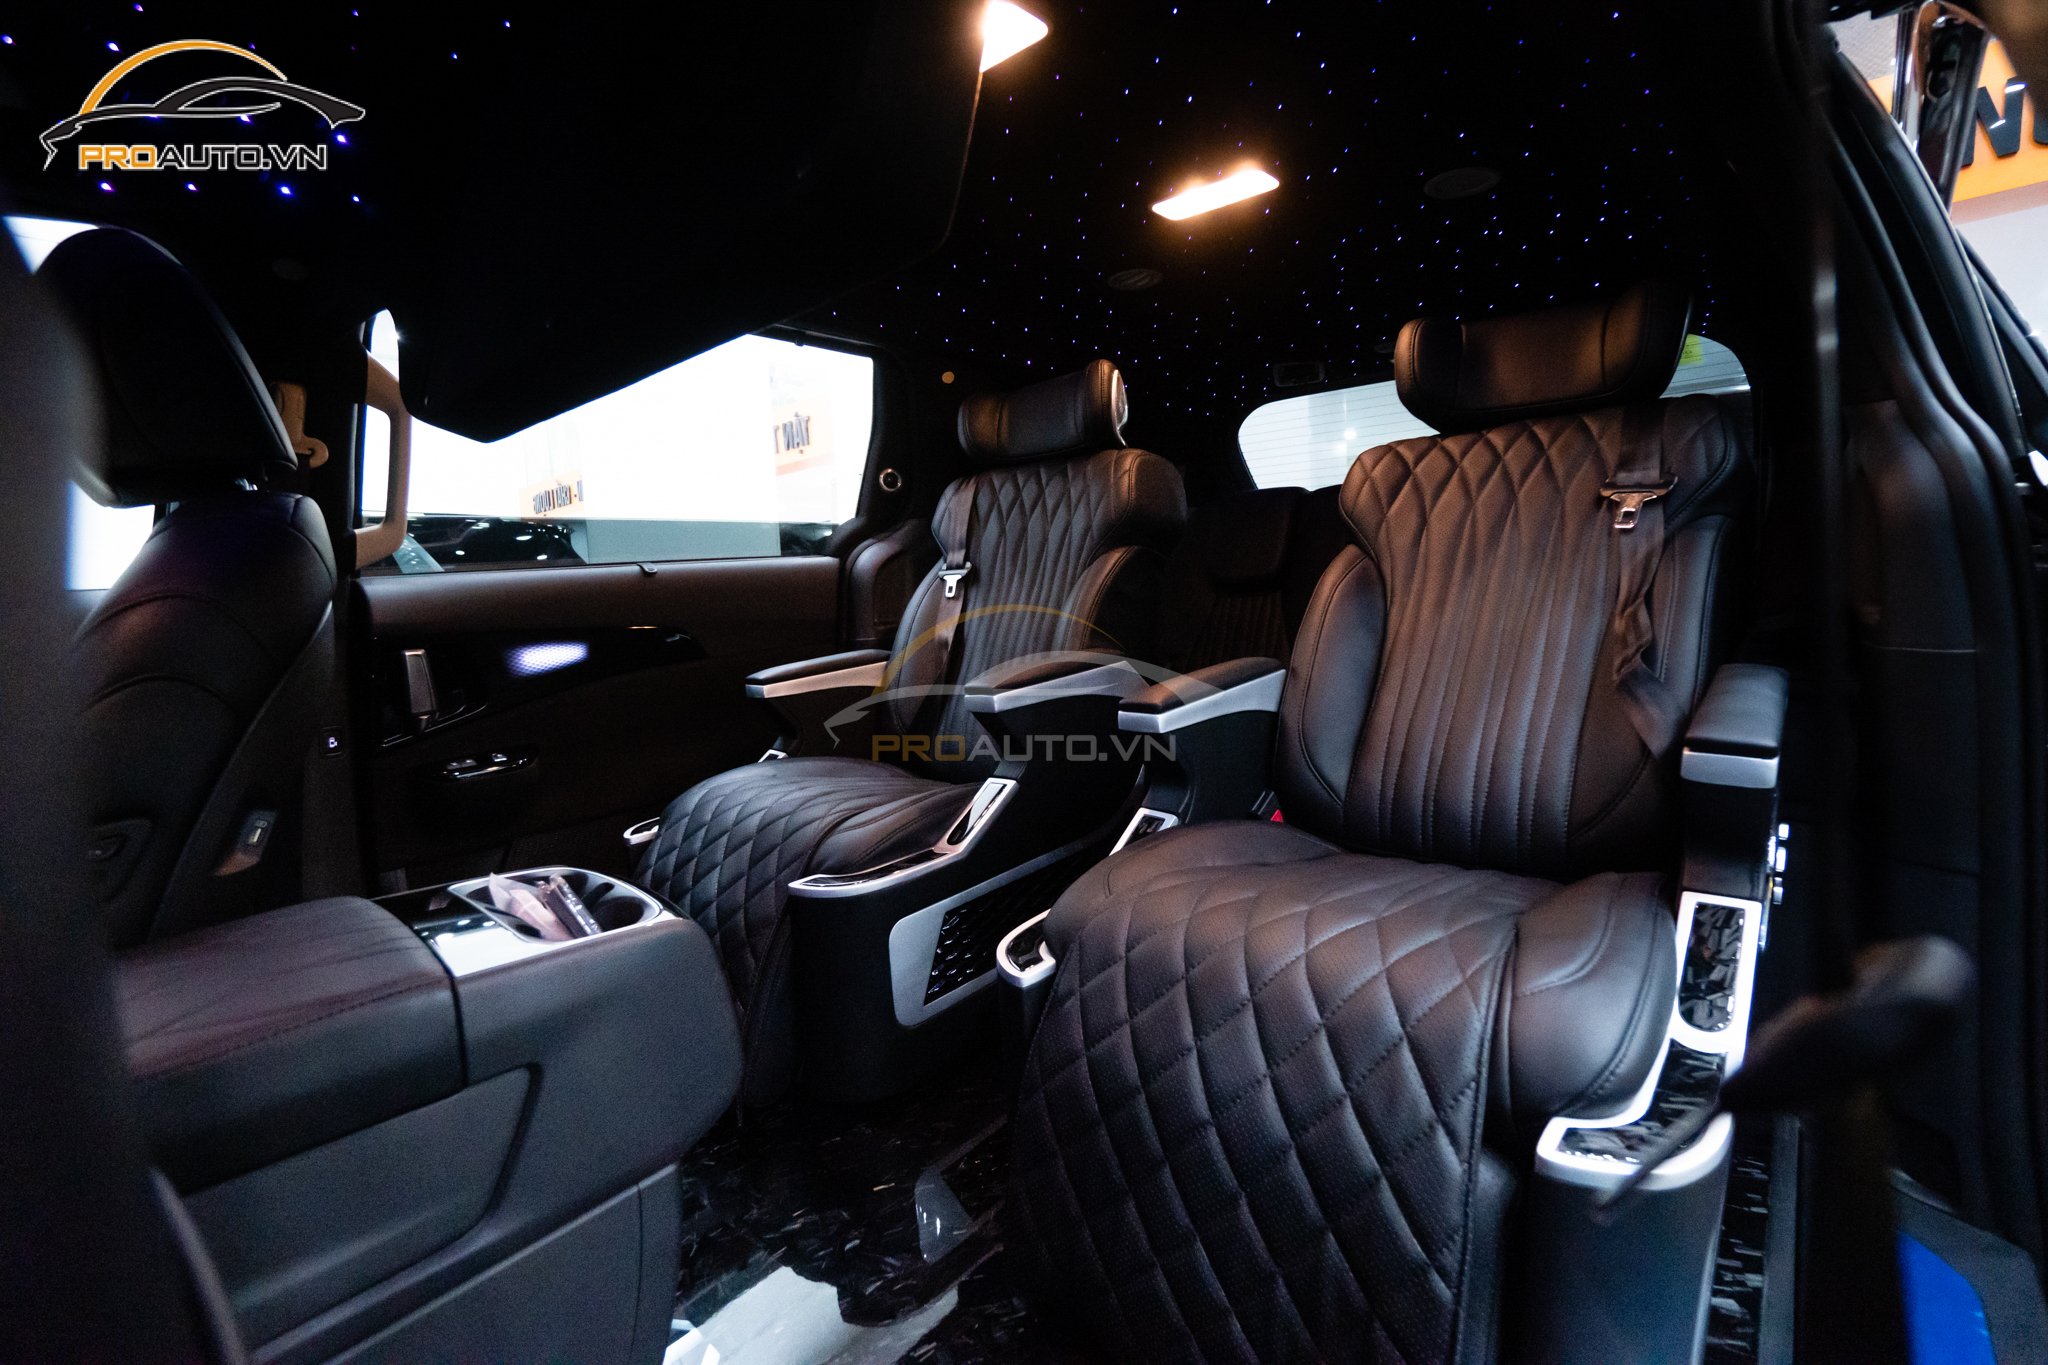 Độ cặp ghế Limousine Vip với đầy đủ các chức năng tiện ích